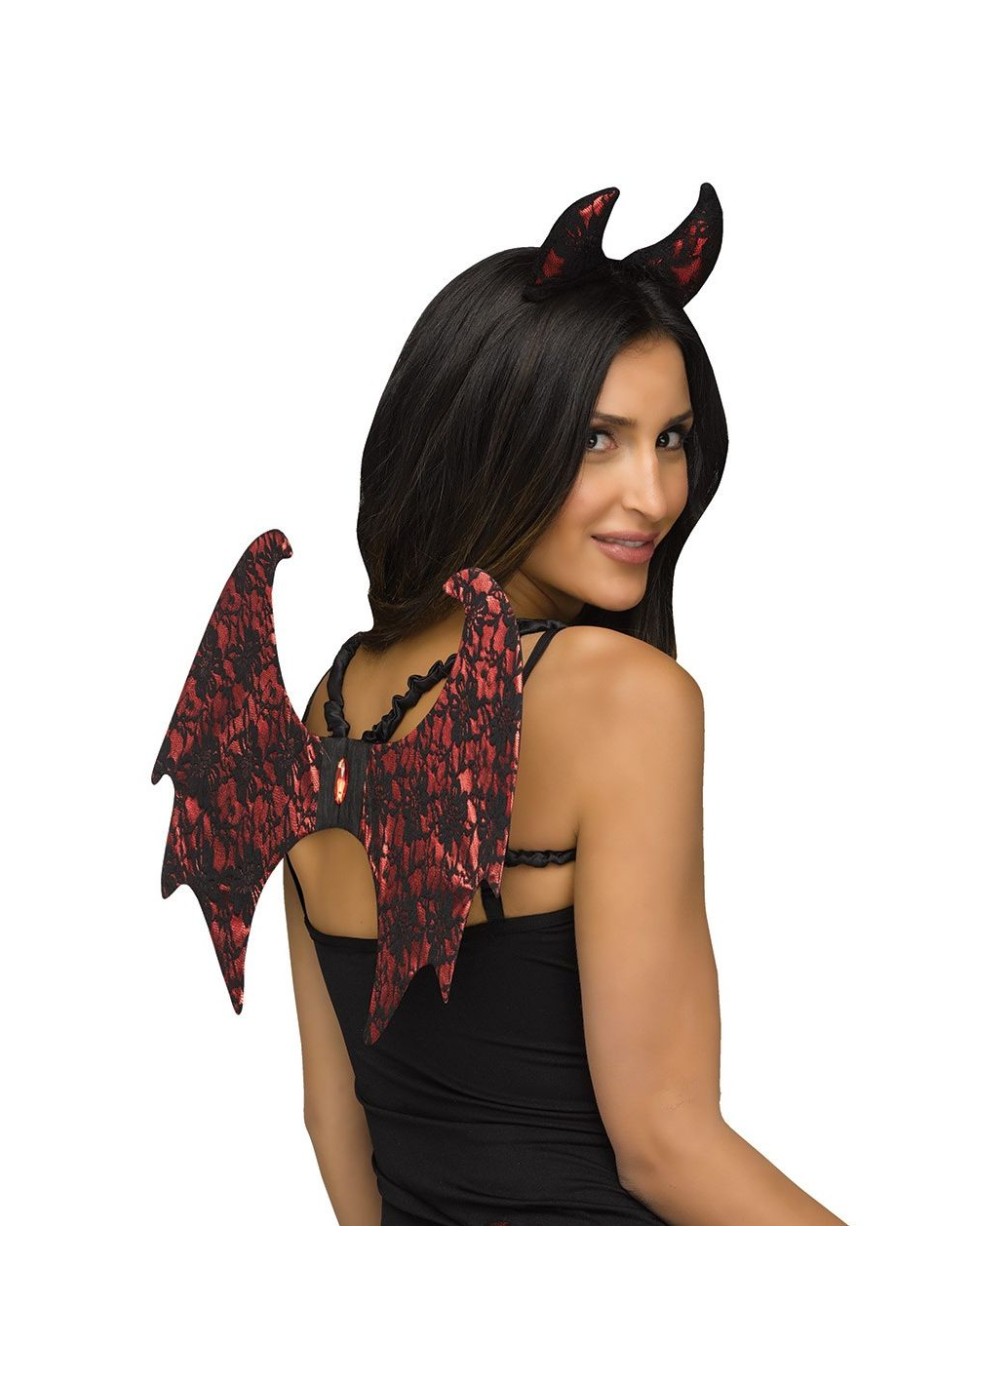 Devil Women Costume Kit